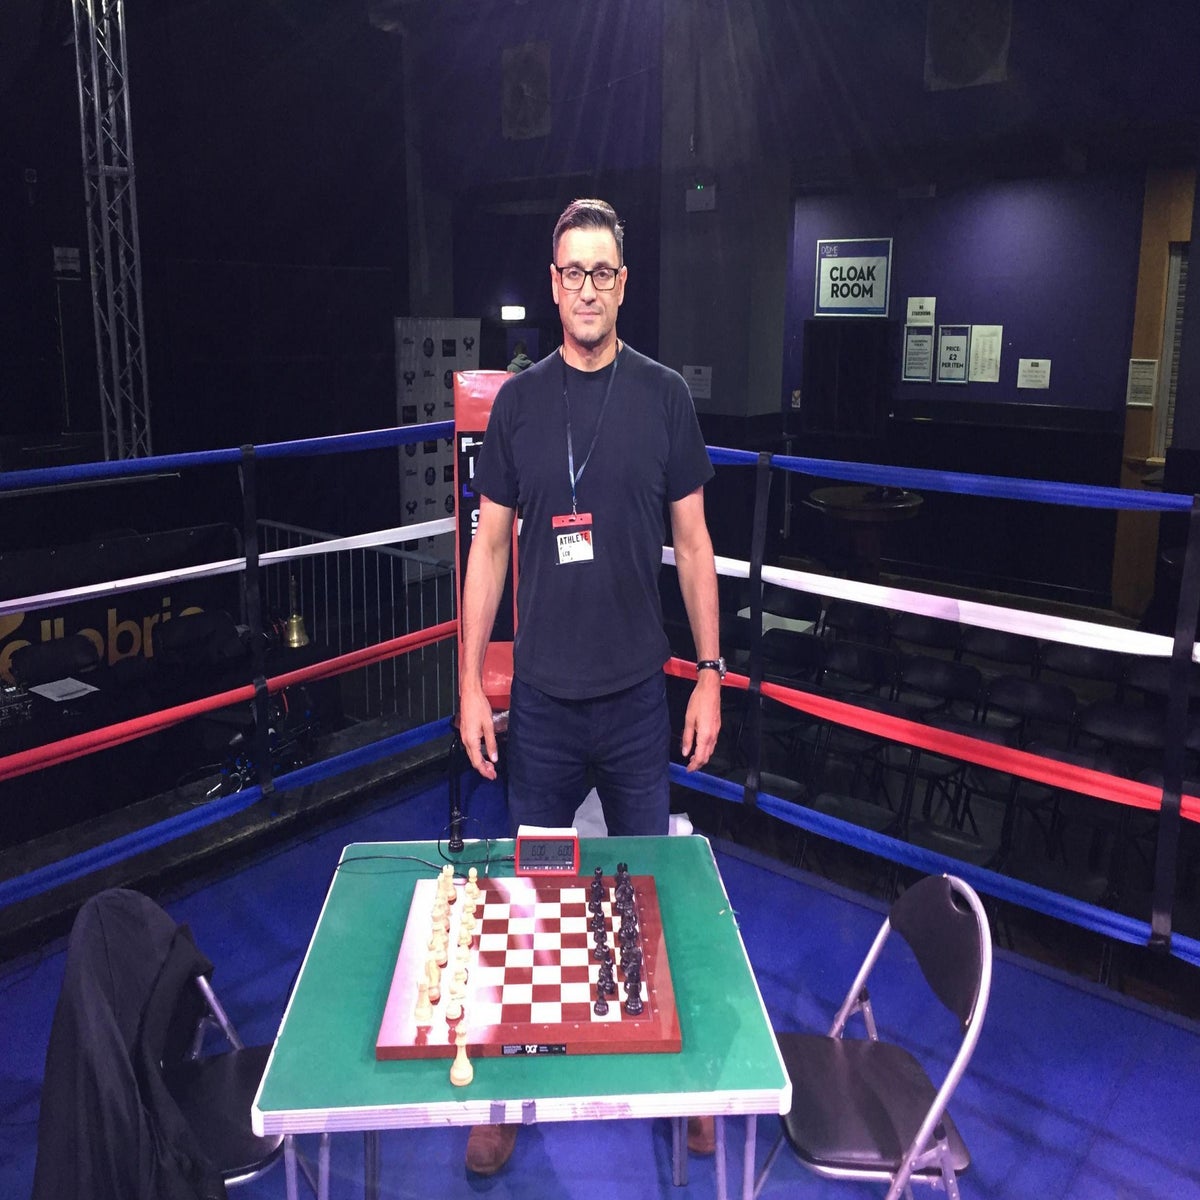 Chessboxing World Championship Finals 2018 - Matt Thomas (USA) 